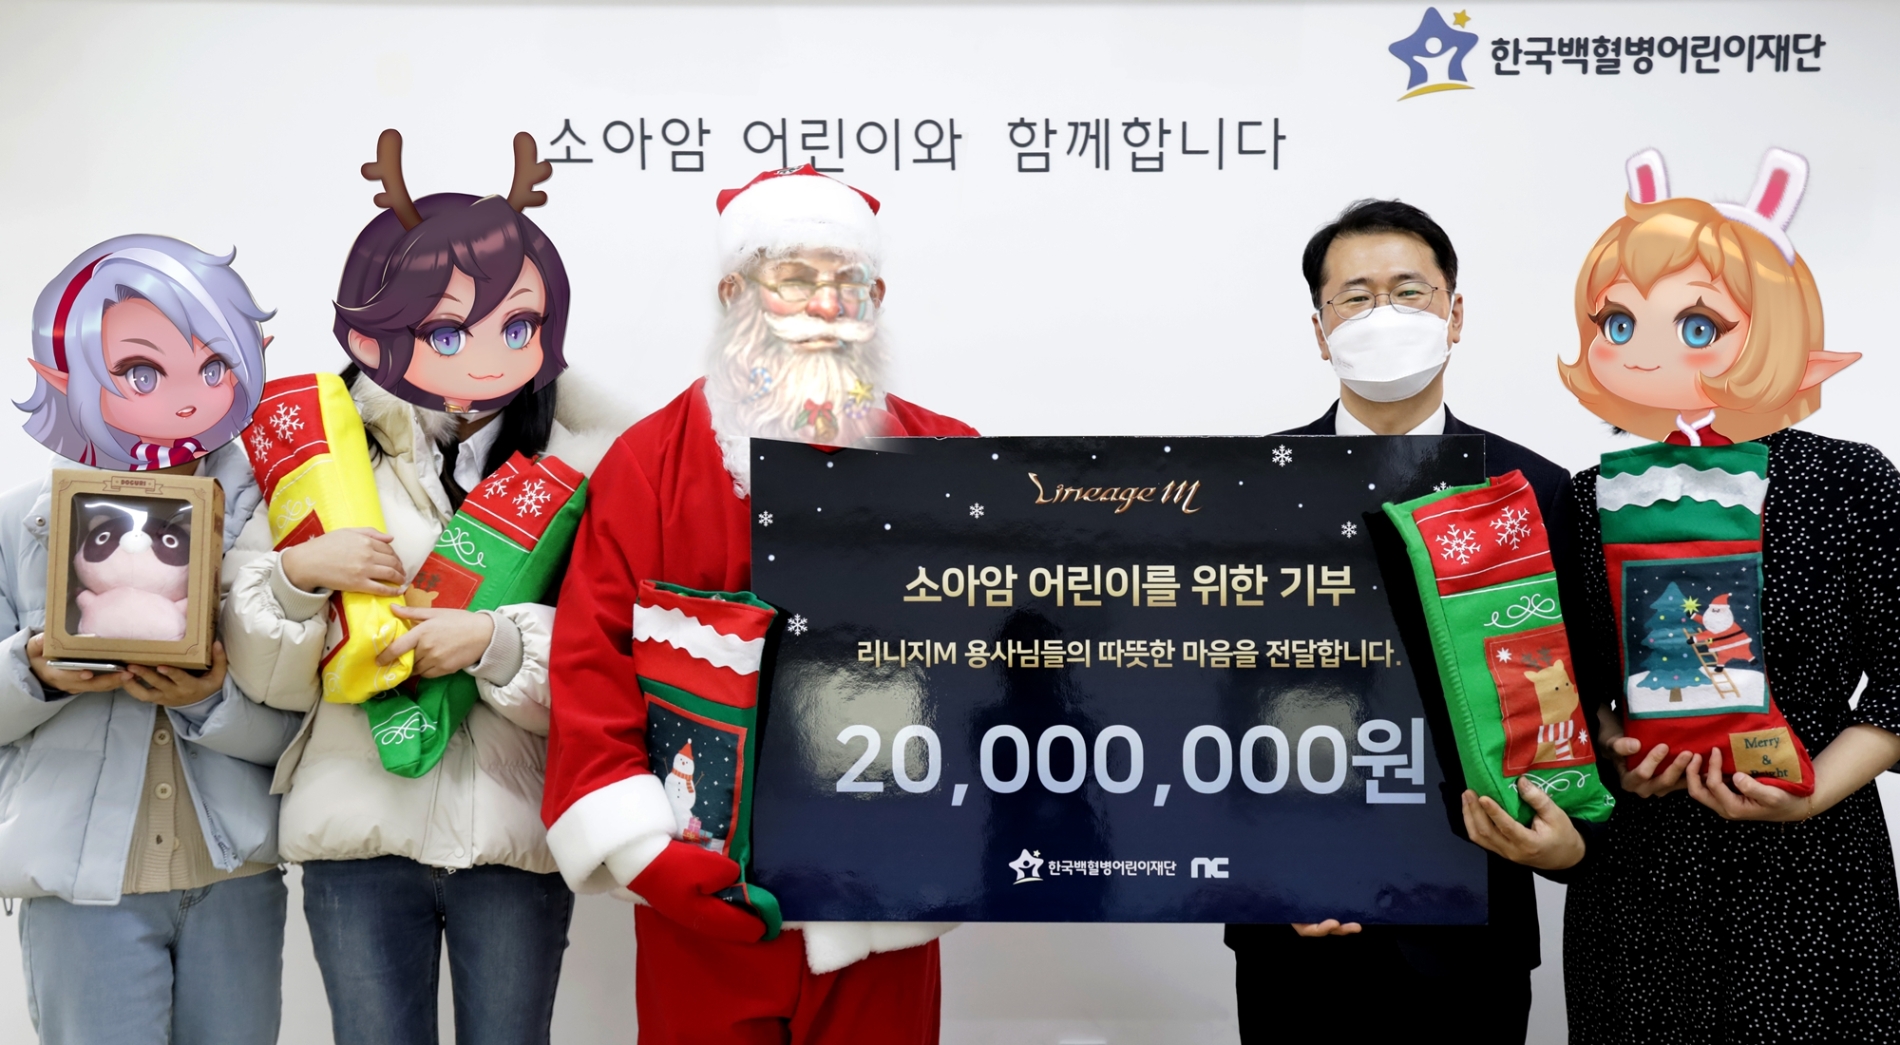 엔씨소프트(대표 김택진)의 MMORPG(다중접속역할수행게임) ‘리니지M’이 소아암 환아를 위해 한국백혈병어린이재단에 2000만원을 기부했다. 사진=엔씨소프트